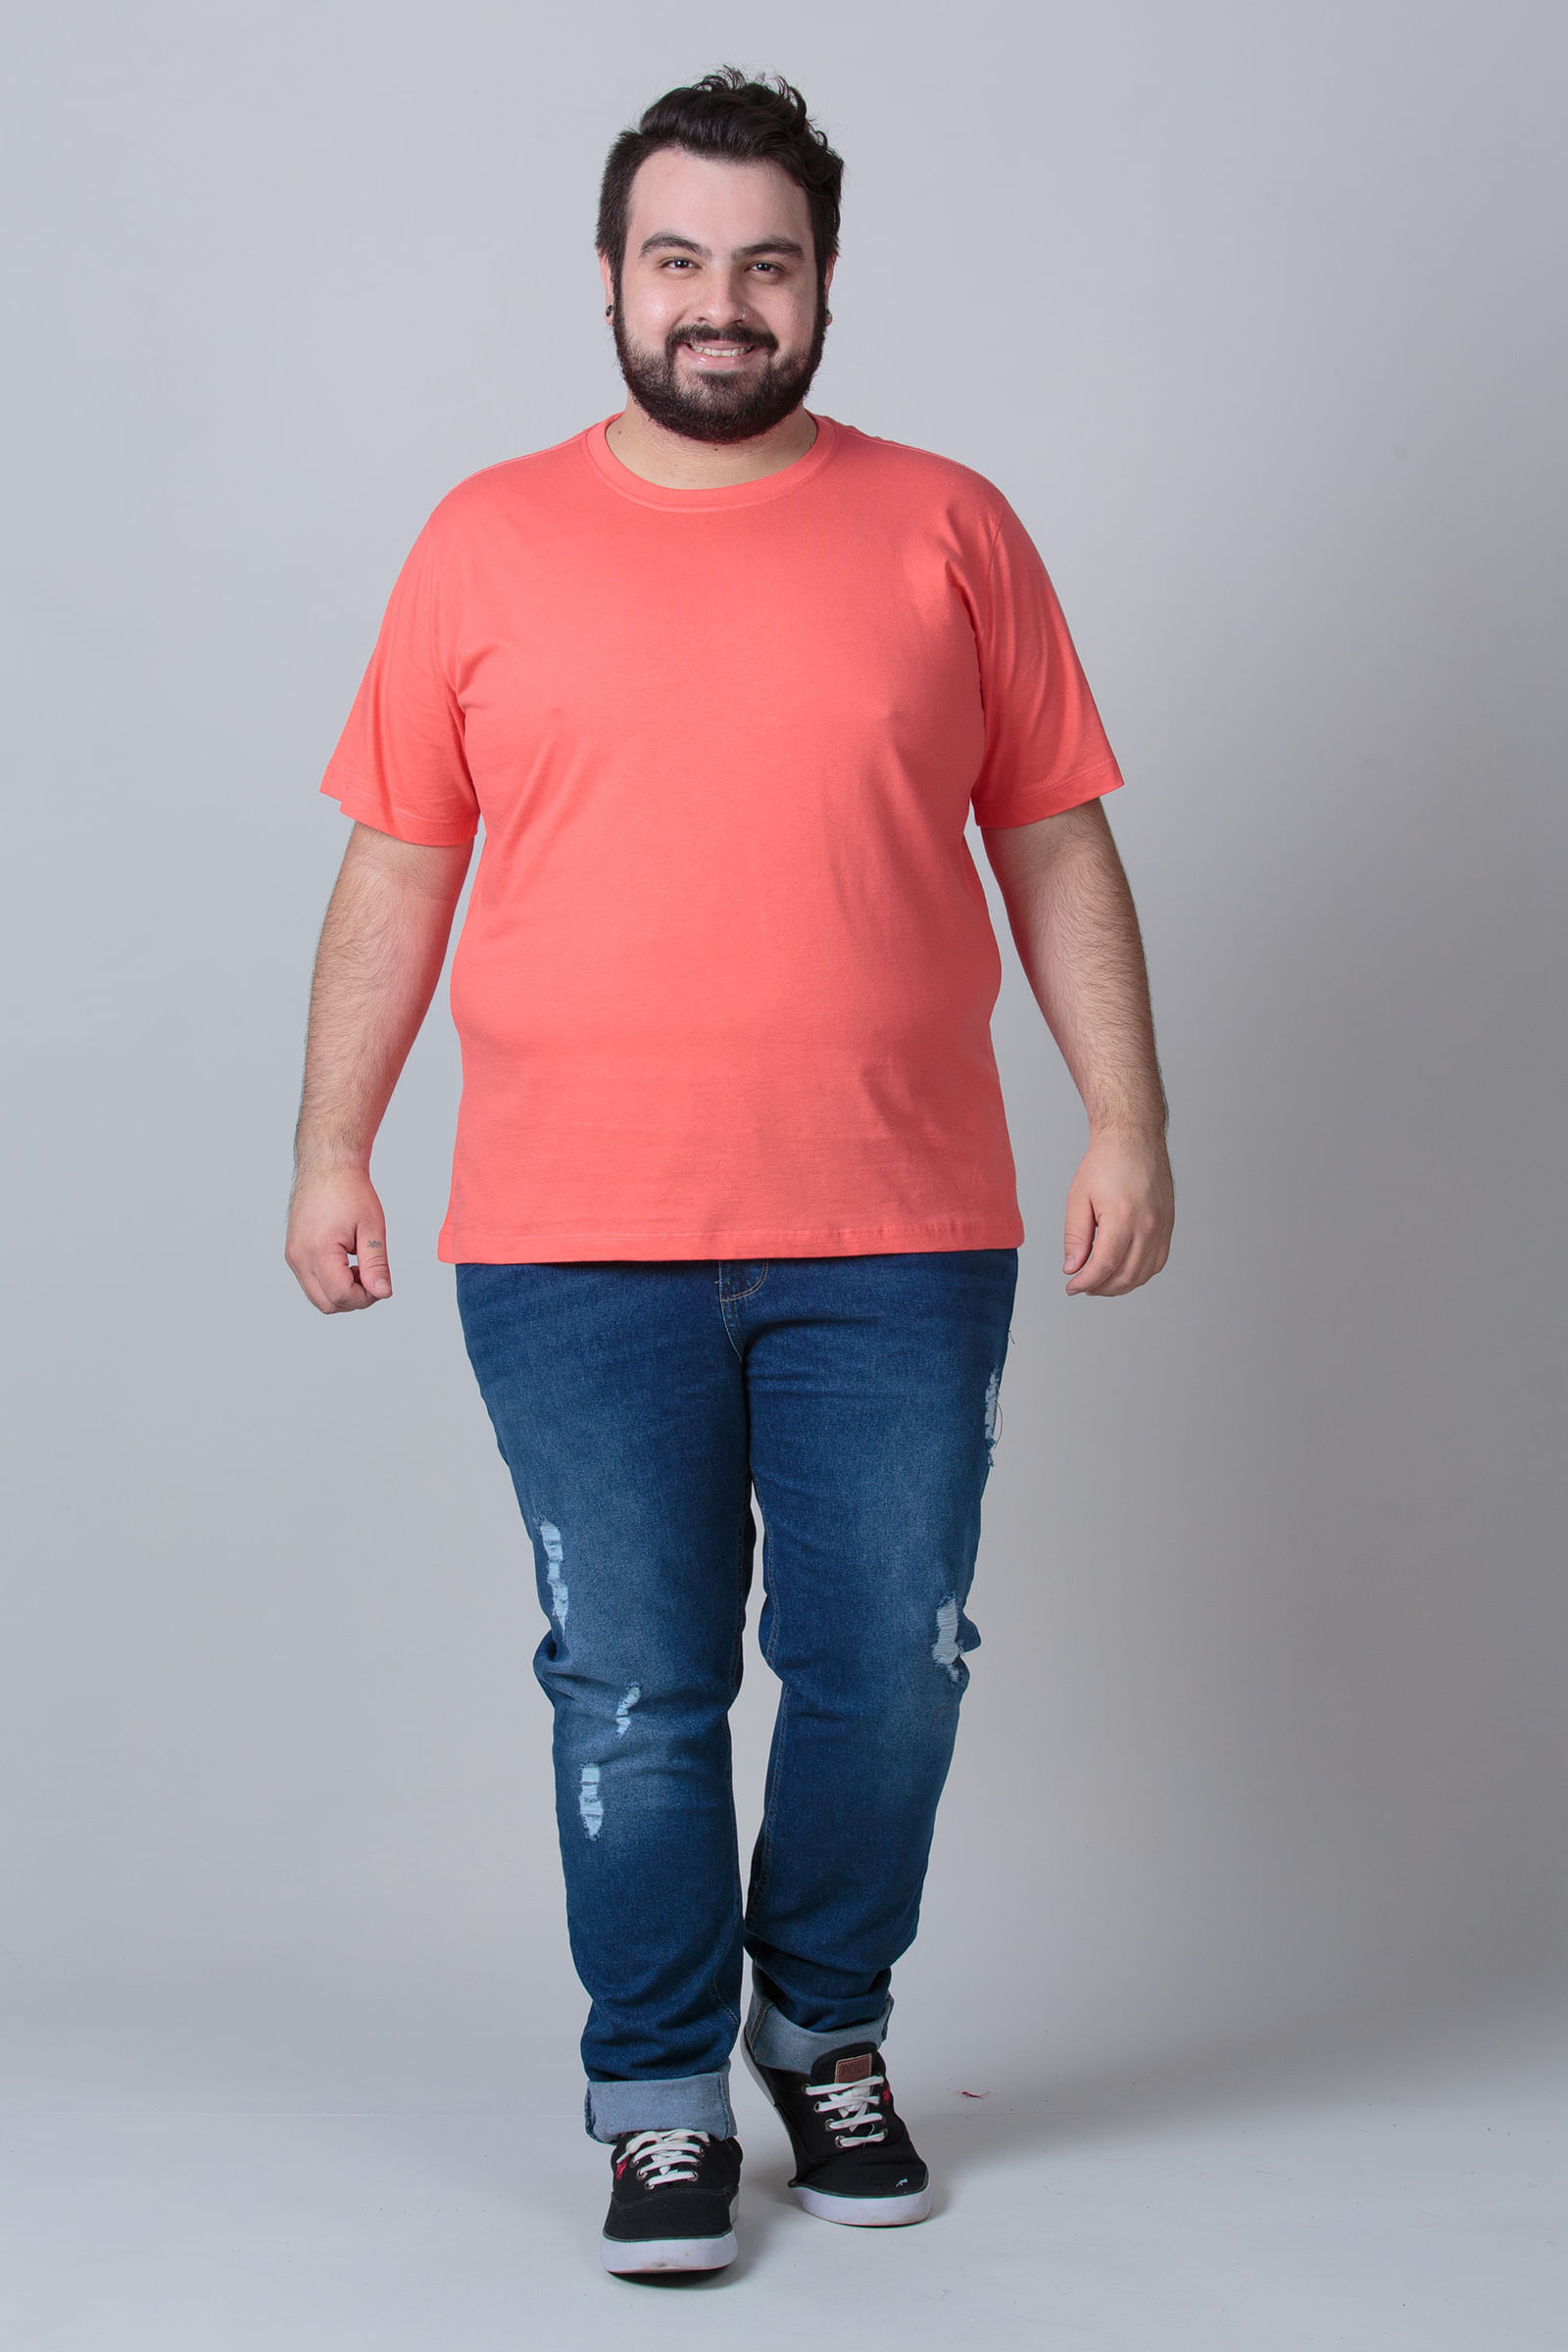 Camiseta-basica-masculina-plus-size